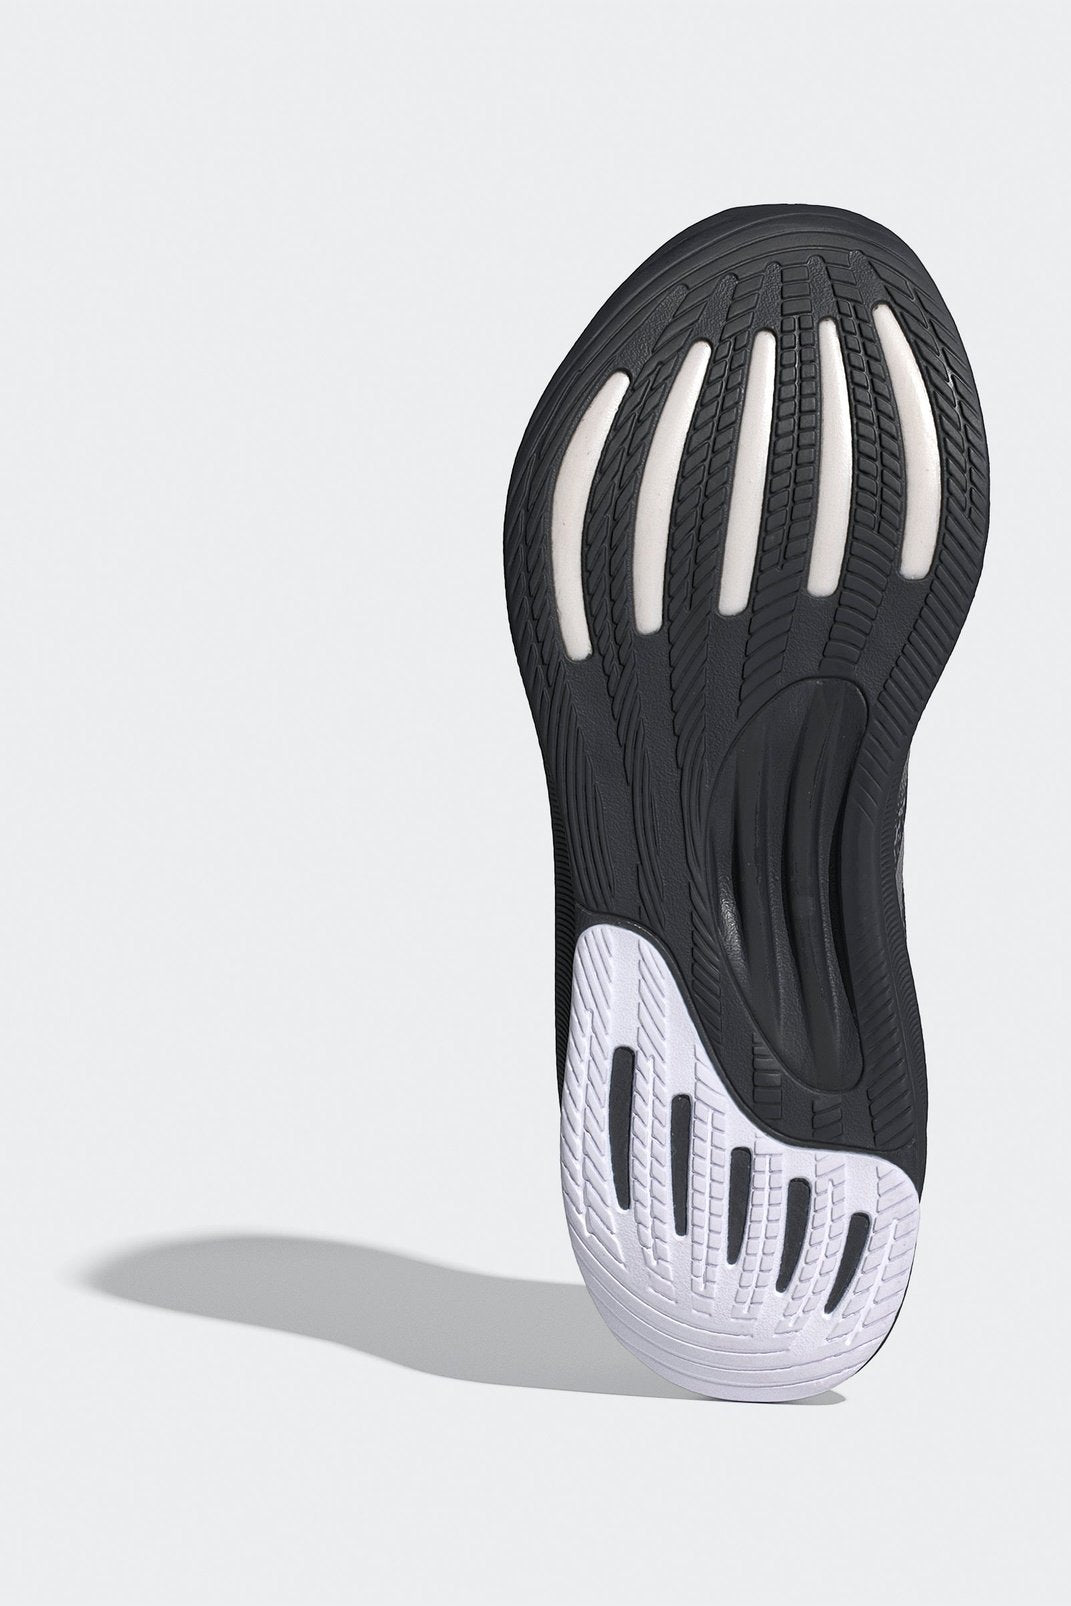 נעלי ספורט לנשים SUPERNOVA STRIDE בצבע לבן ושחור